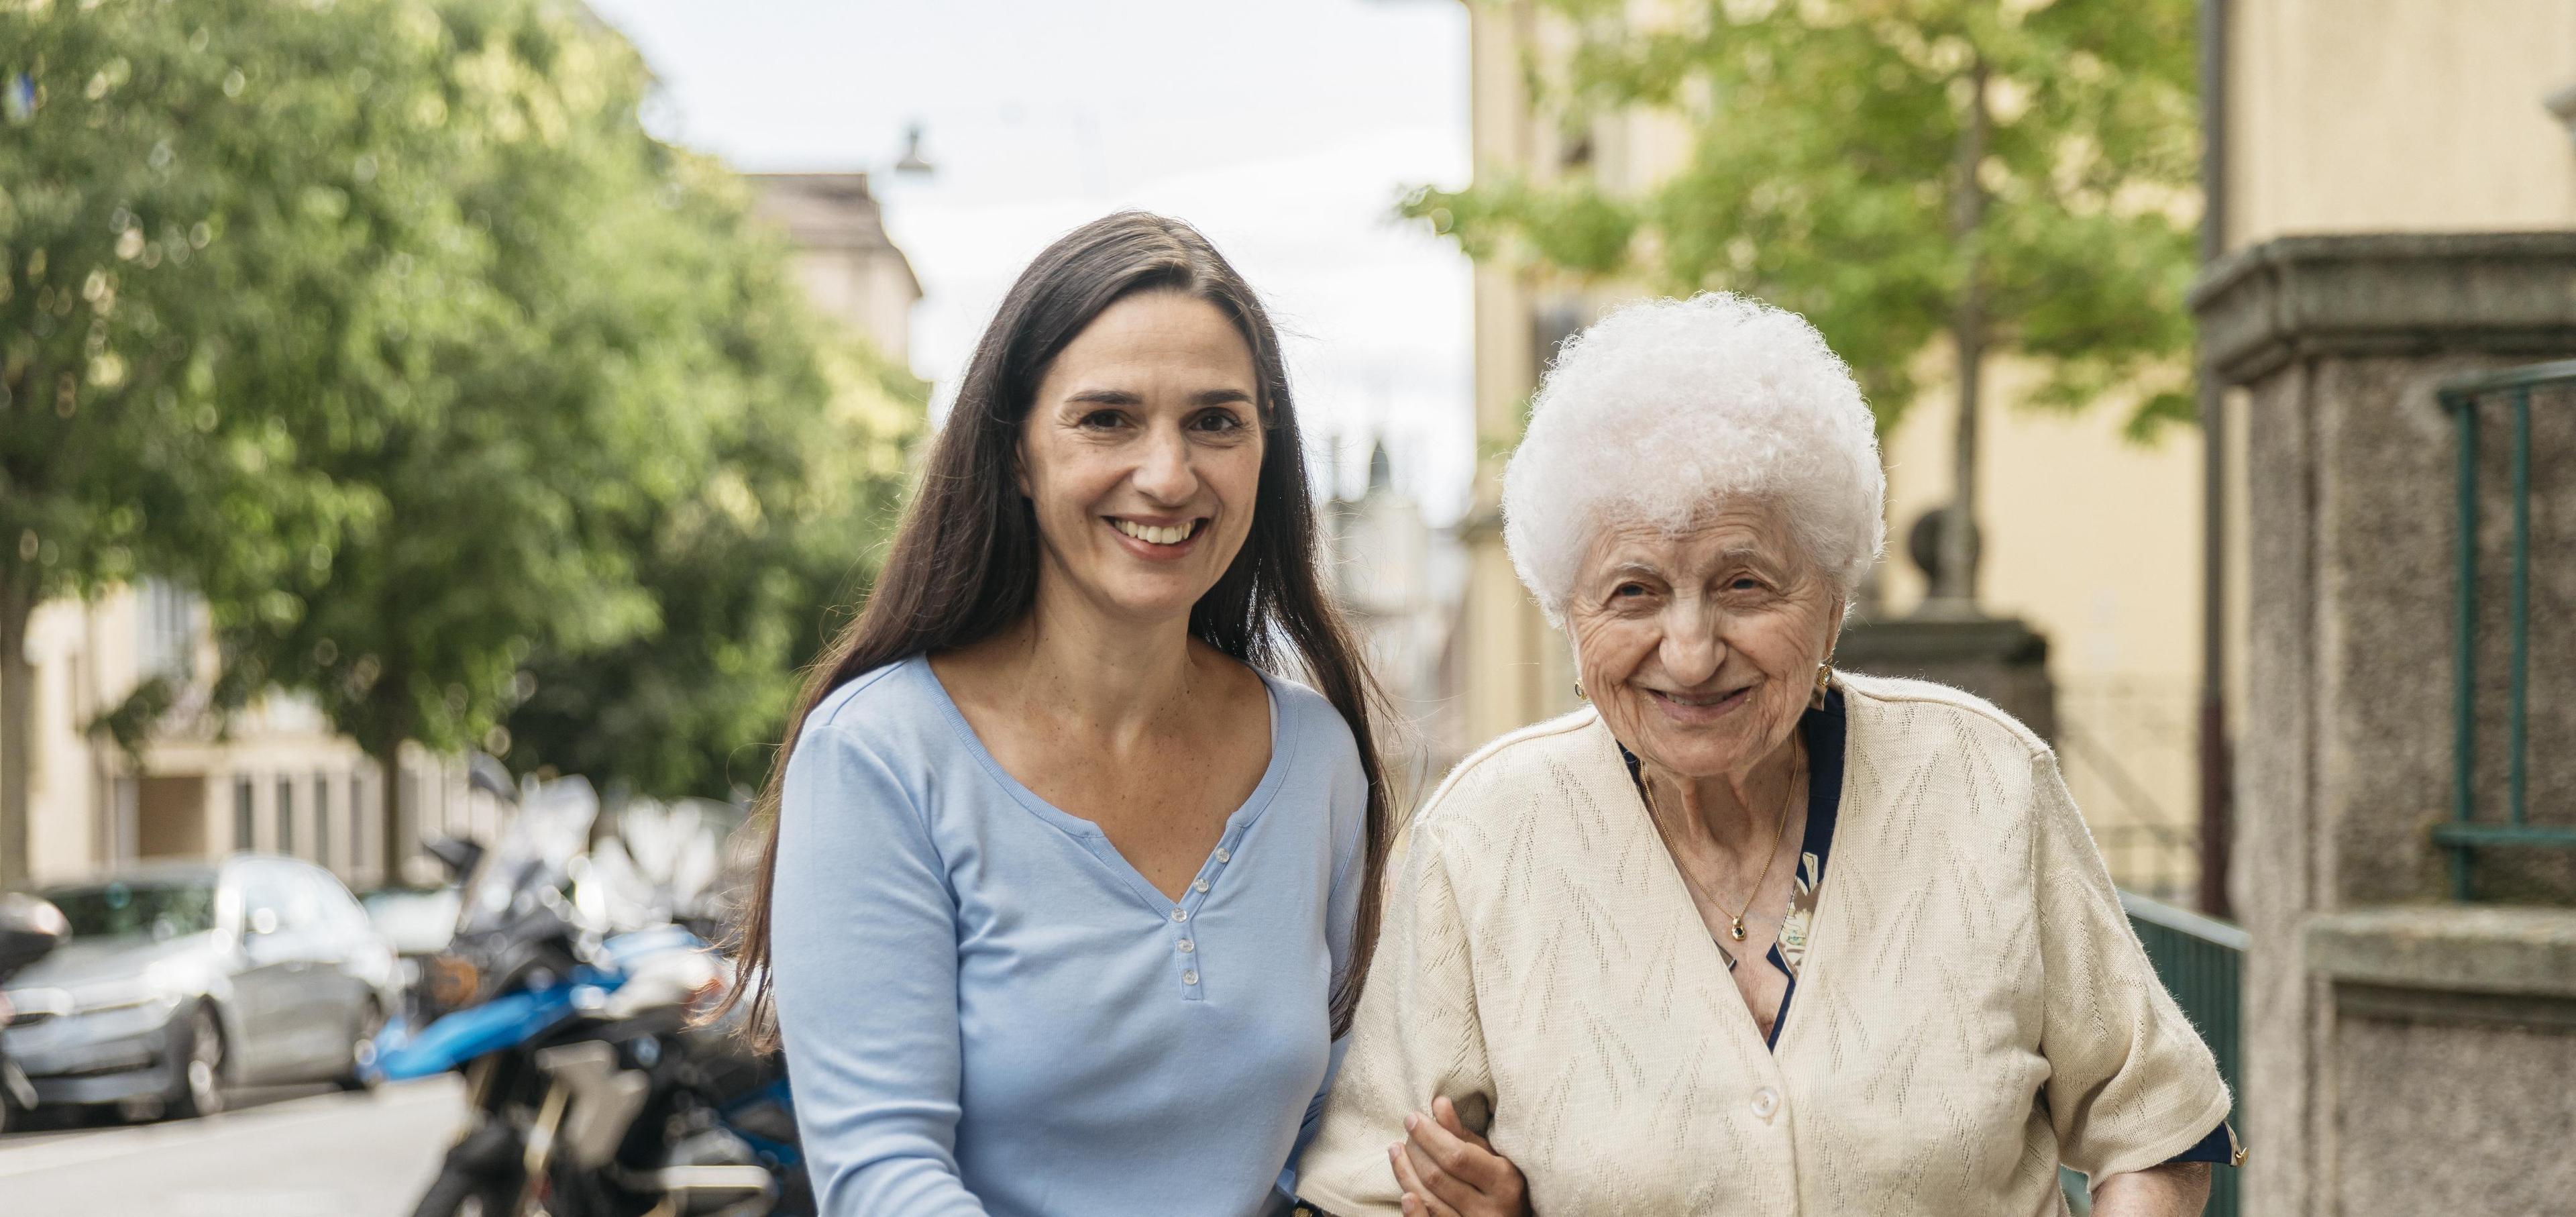 Una donna più giovane a braccetto con una donna più anziana durante una passeggiata.